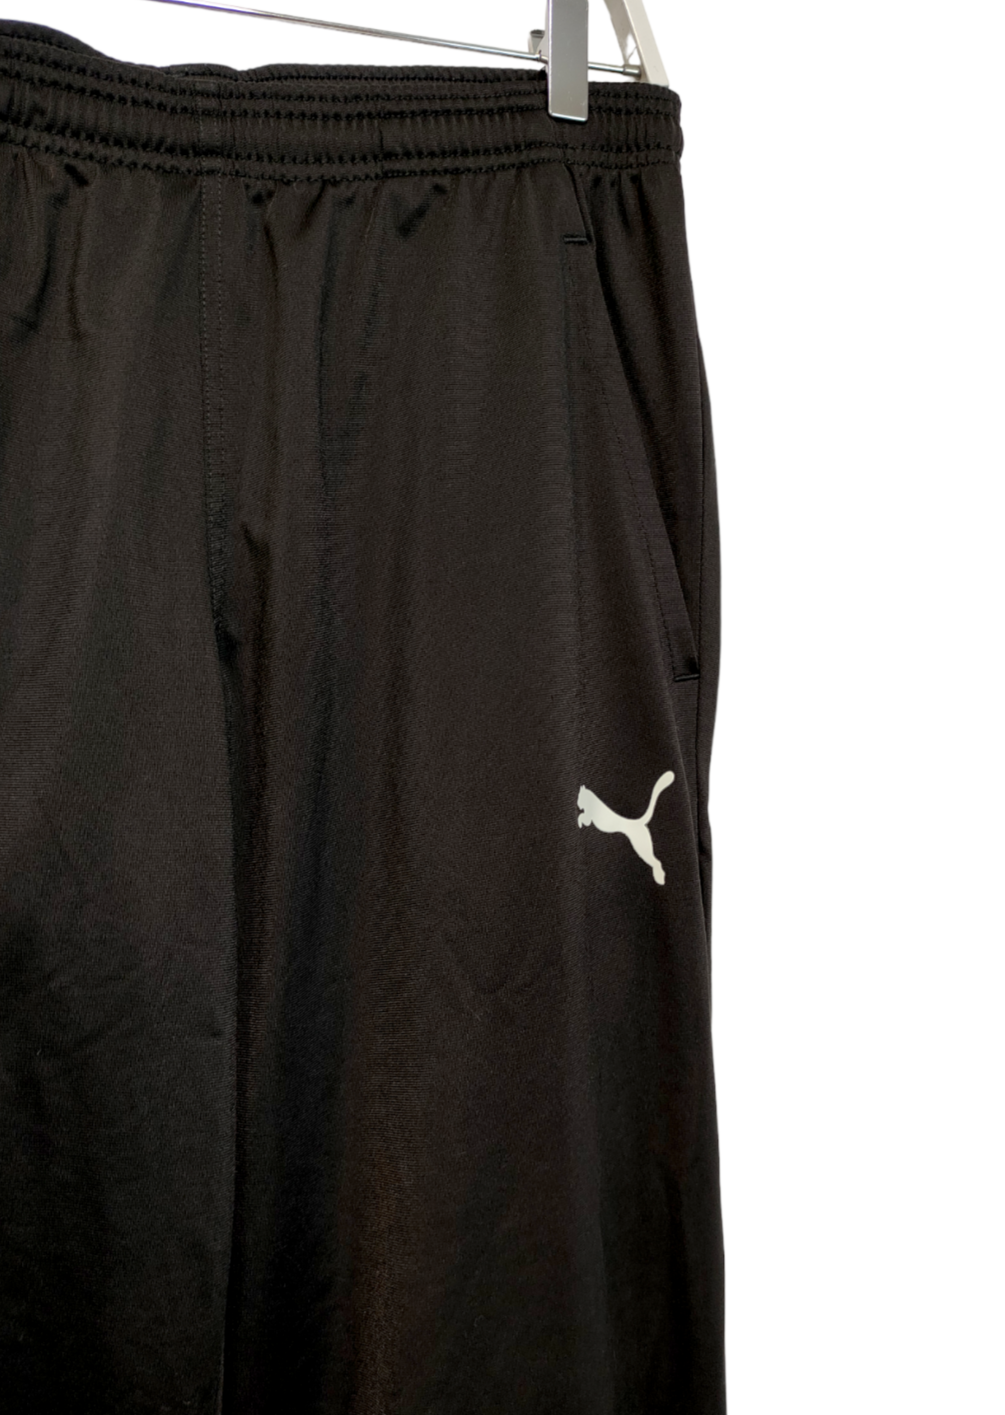 Ανδρική Αθλητική Φόρμα PUMA σε Μαύρο χρώμα (Medium)